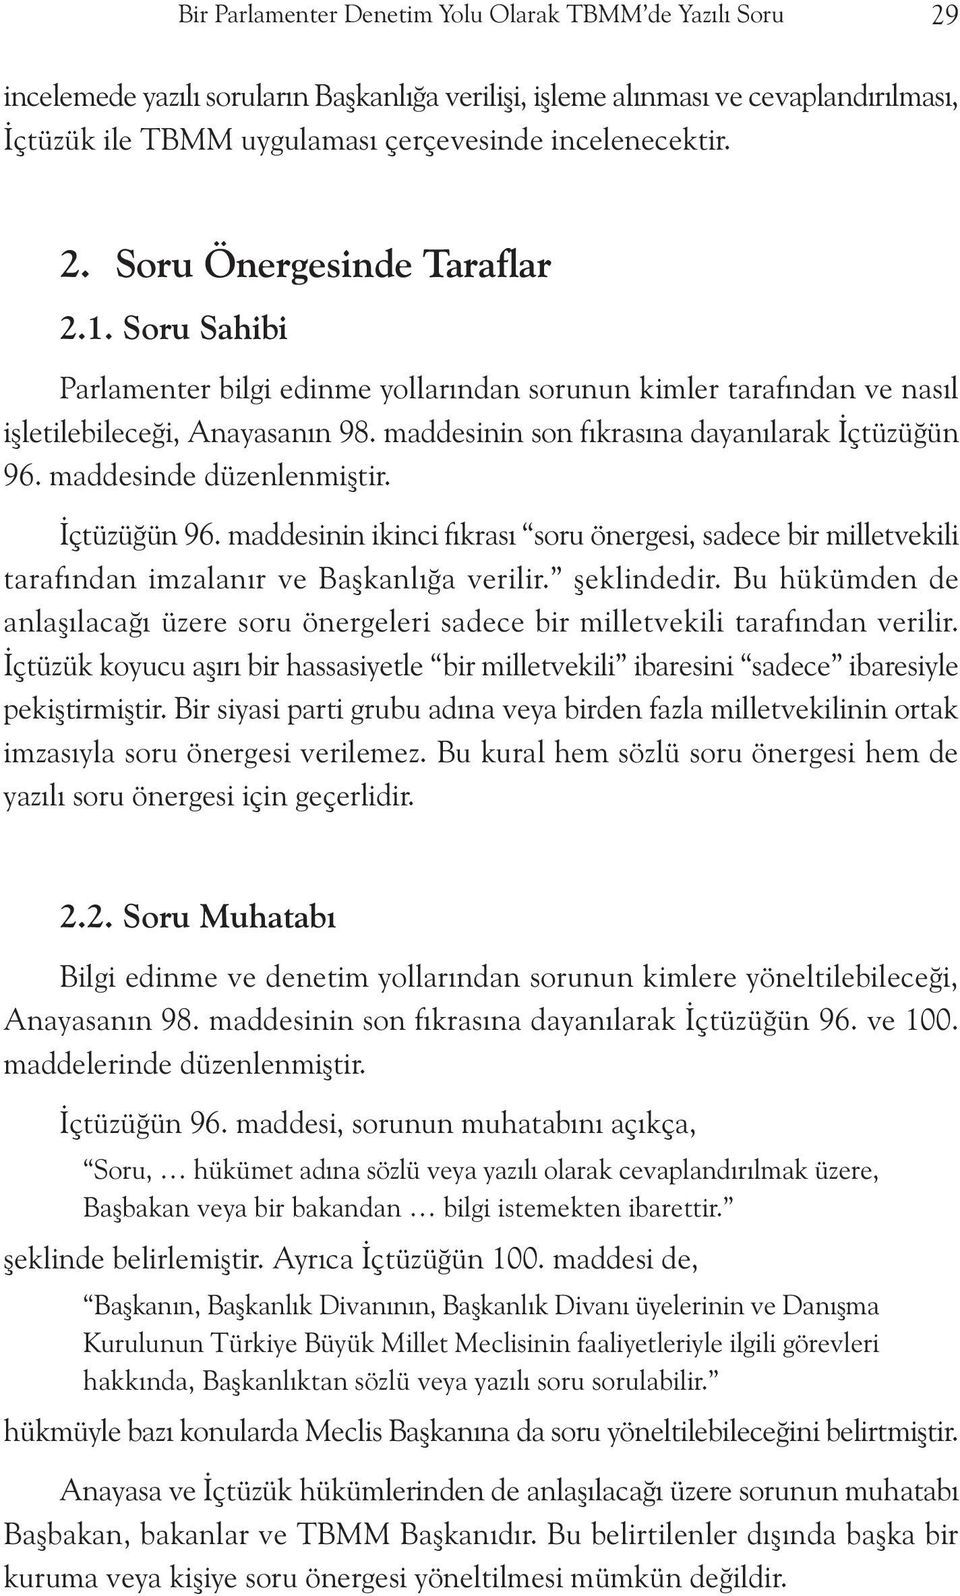 maddesinin son fýkrasýna dayanýlarak Ýçtüzüðün 96. maddesinde düzenlenmiþtir. Ýçtüzüðün 96. maddesinin ikinci fýkrasý soru önergesi, sadece bir milletvekili tarafýndan imzalanýr ve Baþkanlýða verilir.